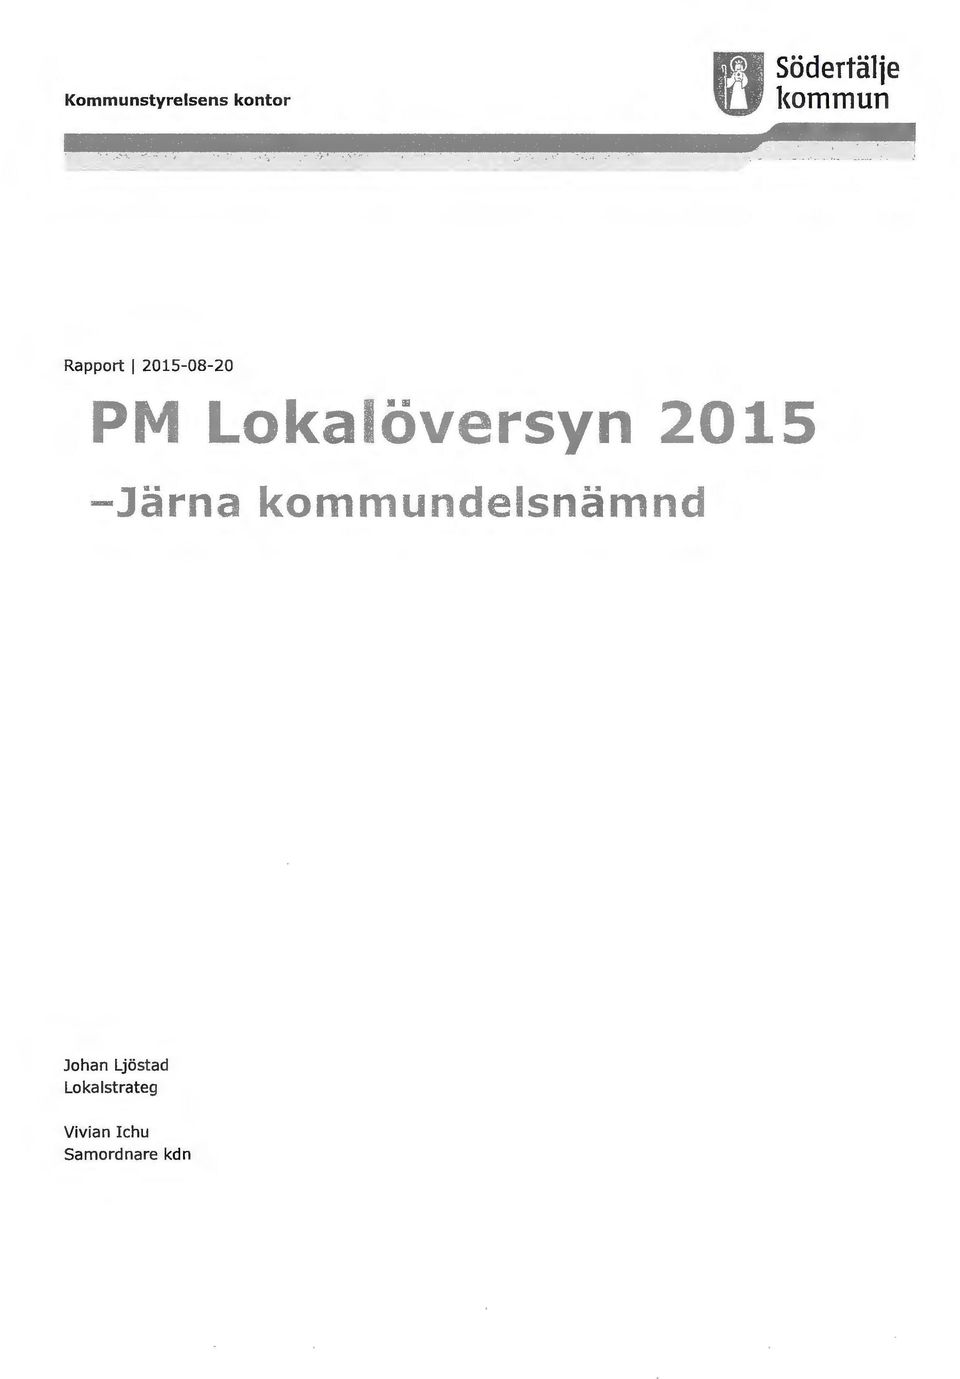 2015-08-20 Johan Ljöstad Lo k